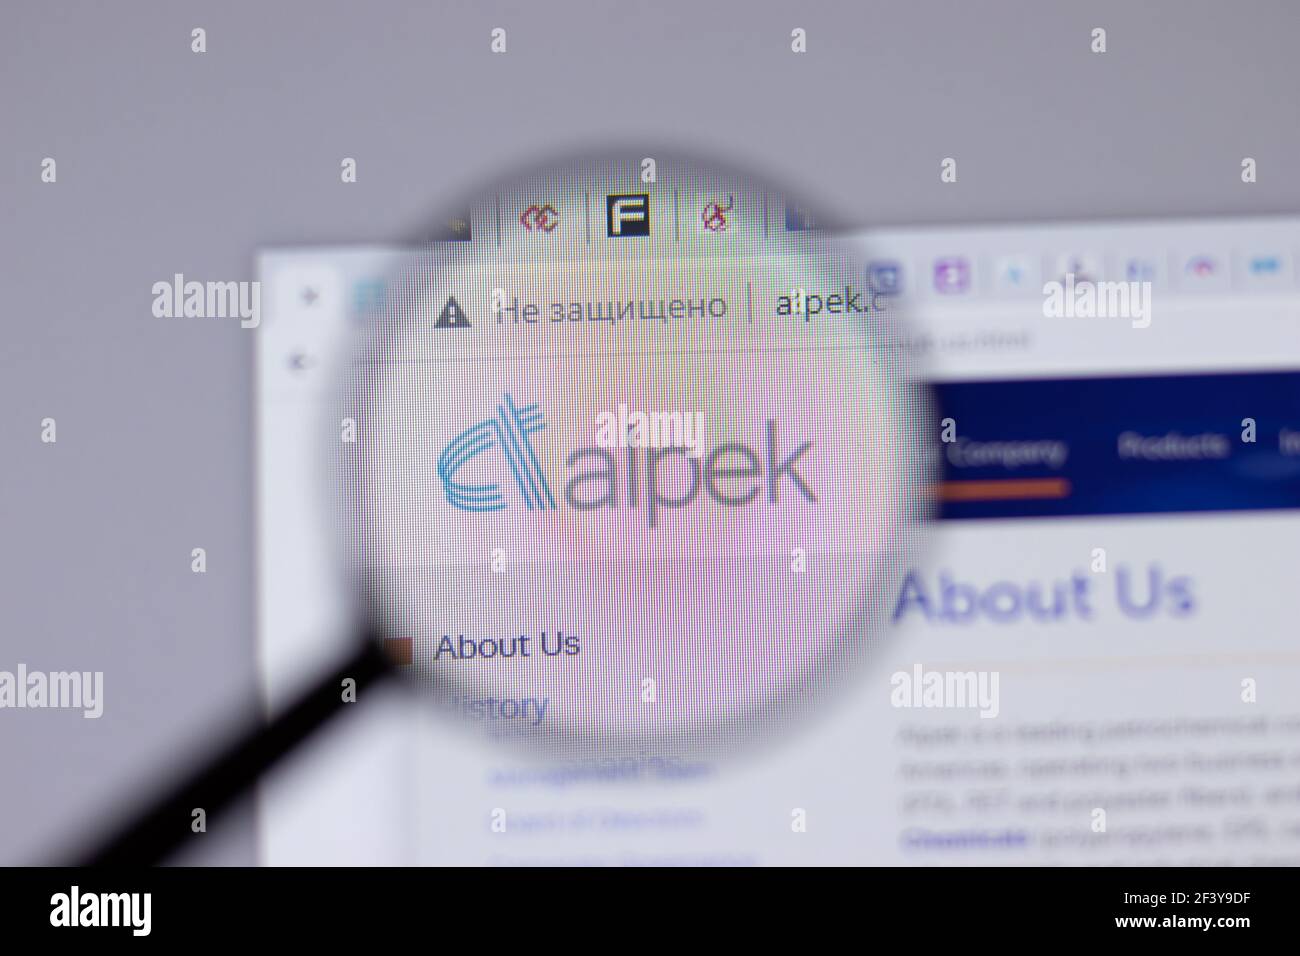 New York, USA - 18 Marzo 2021: Icona del logo della società Alpek sul sito, Editoriale illustrativo Foto Stock